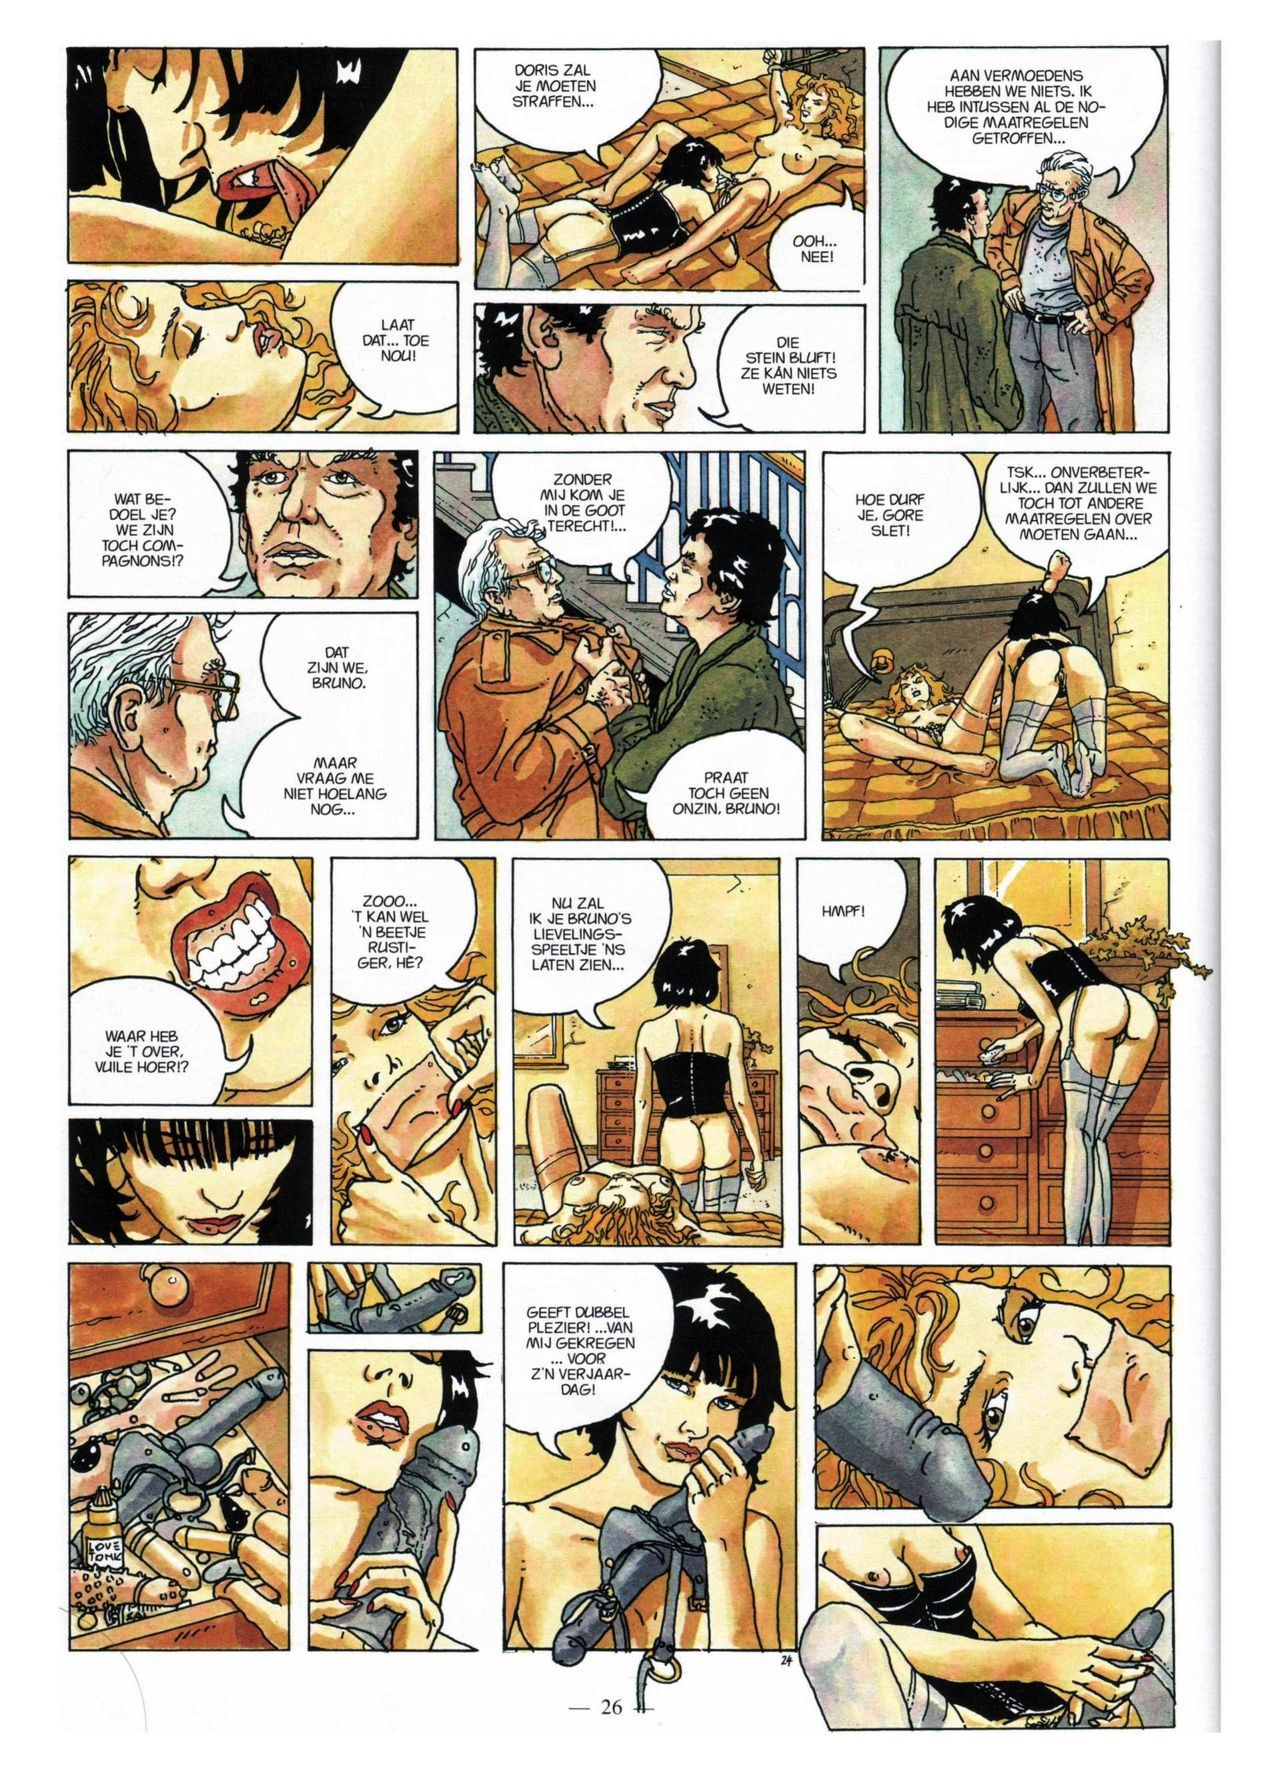 Anna Stein - 03 - De Laatste Alpengloed (Dutch) Engelstalige strips die op deze site staan, hier is de Nederlandse uitgave! 26